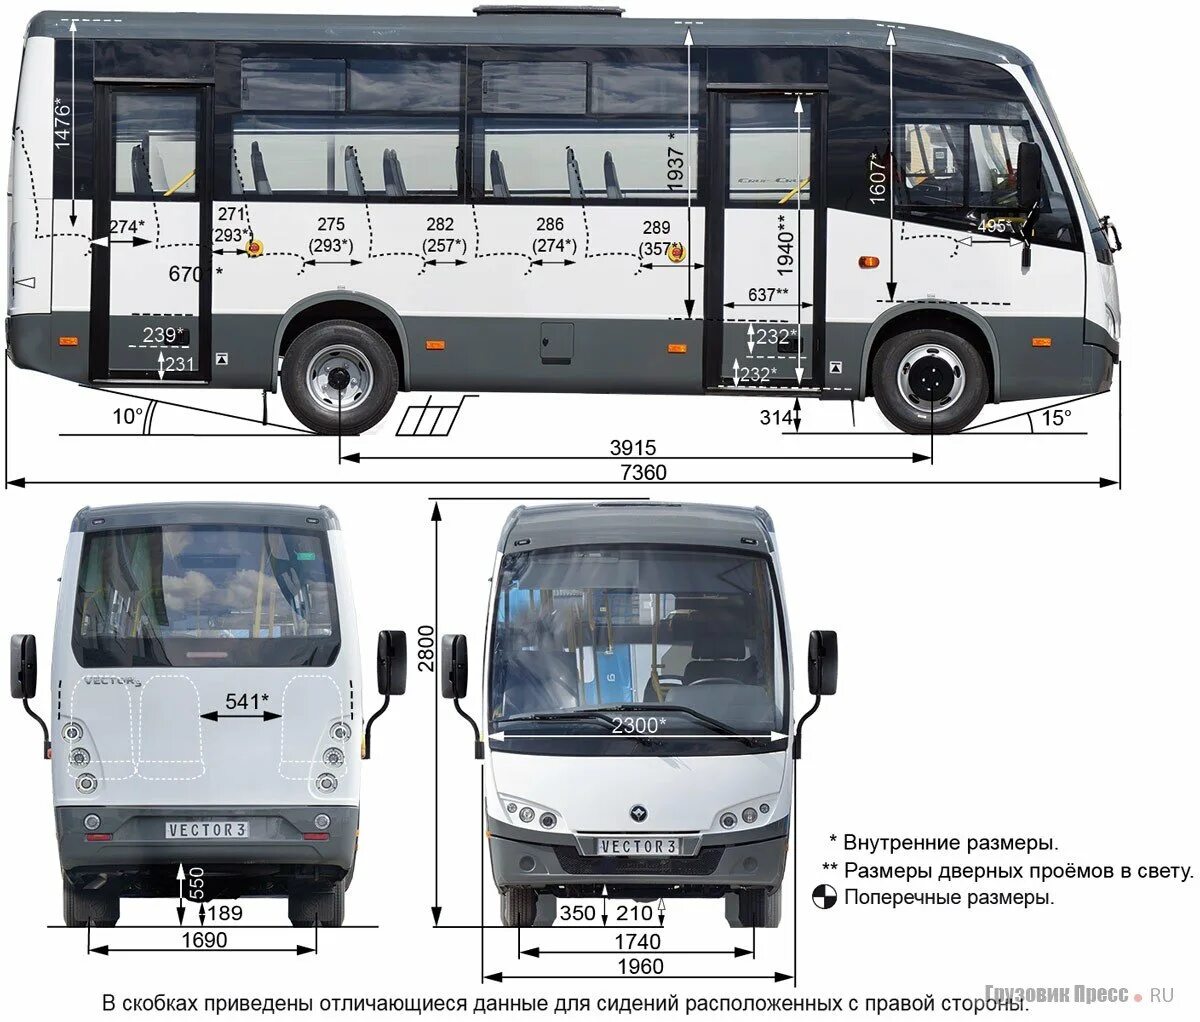 Технические характеристики автобуса паз. ПАЗ 3204 вектор Некст. ПАЗ 320405-04 габариты. ПАЗ vector next 320405-04 характеристики. ПАЗ 3204 габариты салона.